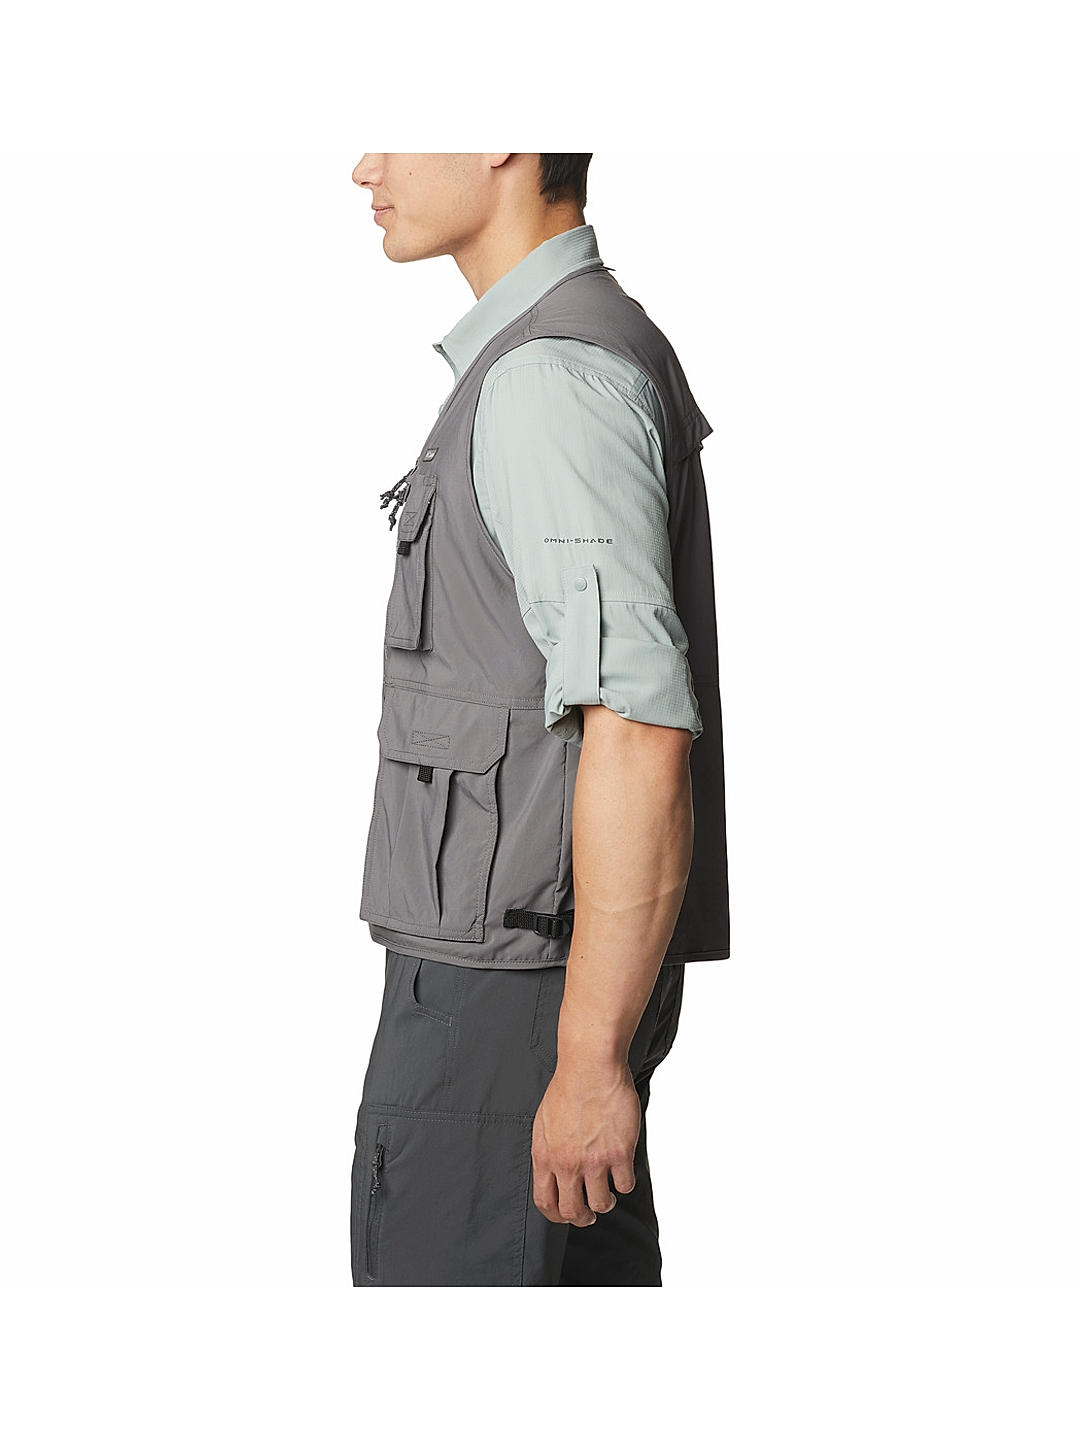 Columbia GRT Omni Dry Men's Large Zip Fishing Vest Khaki Nylon Multi Pockets